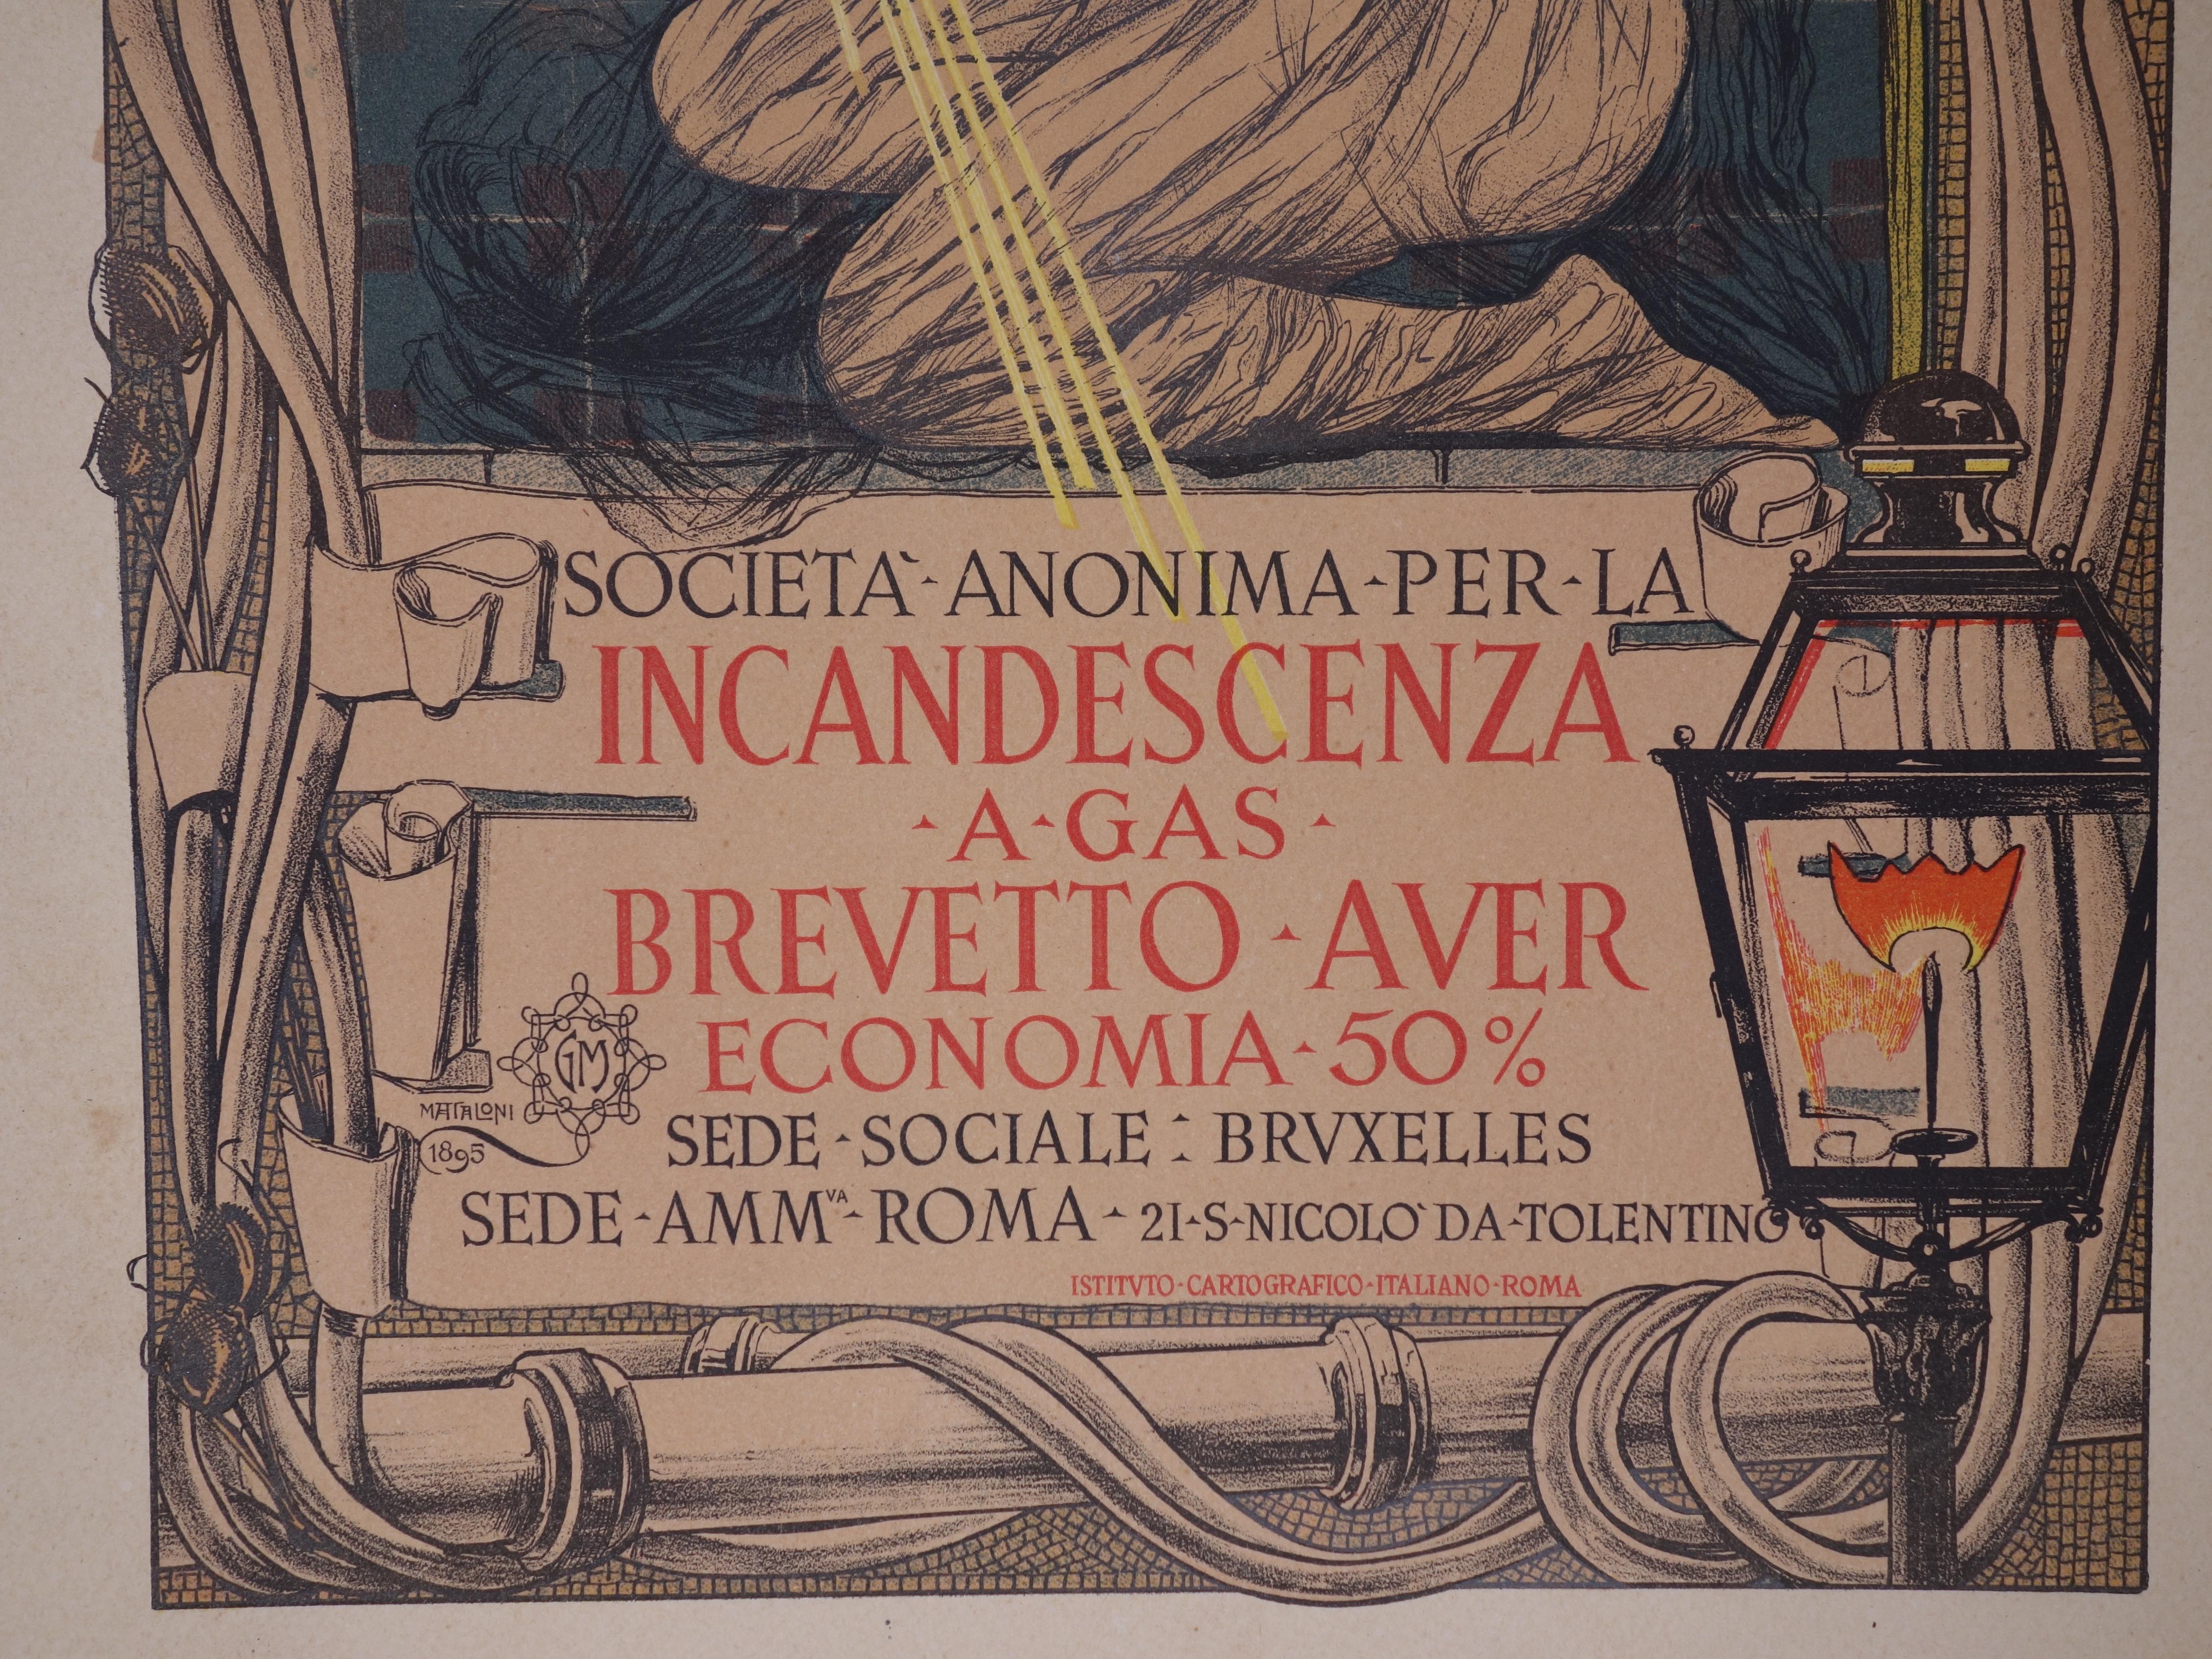 Giovanni Mataloni 
Glühwürmchen, 1897

Original-Lithographie
Gedruckte Unterschrift auf der Platte
Gedruckt auf Vélinpapier 
Größe 40 x 29 cm (ca. 15,7 x 11,4